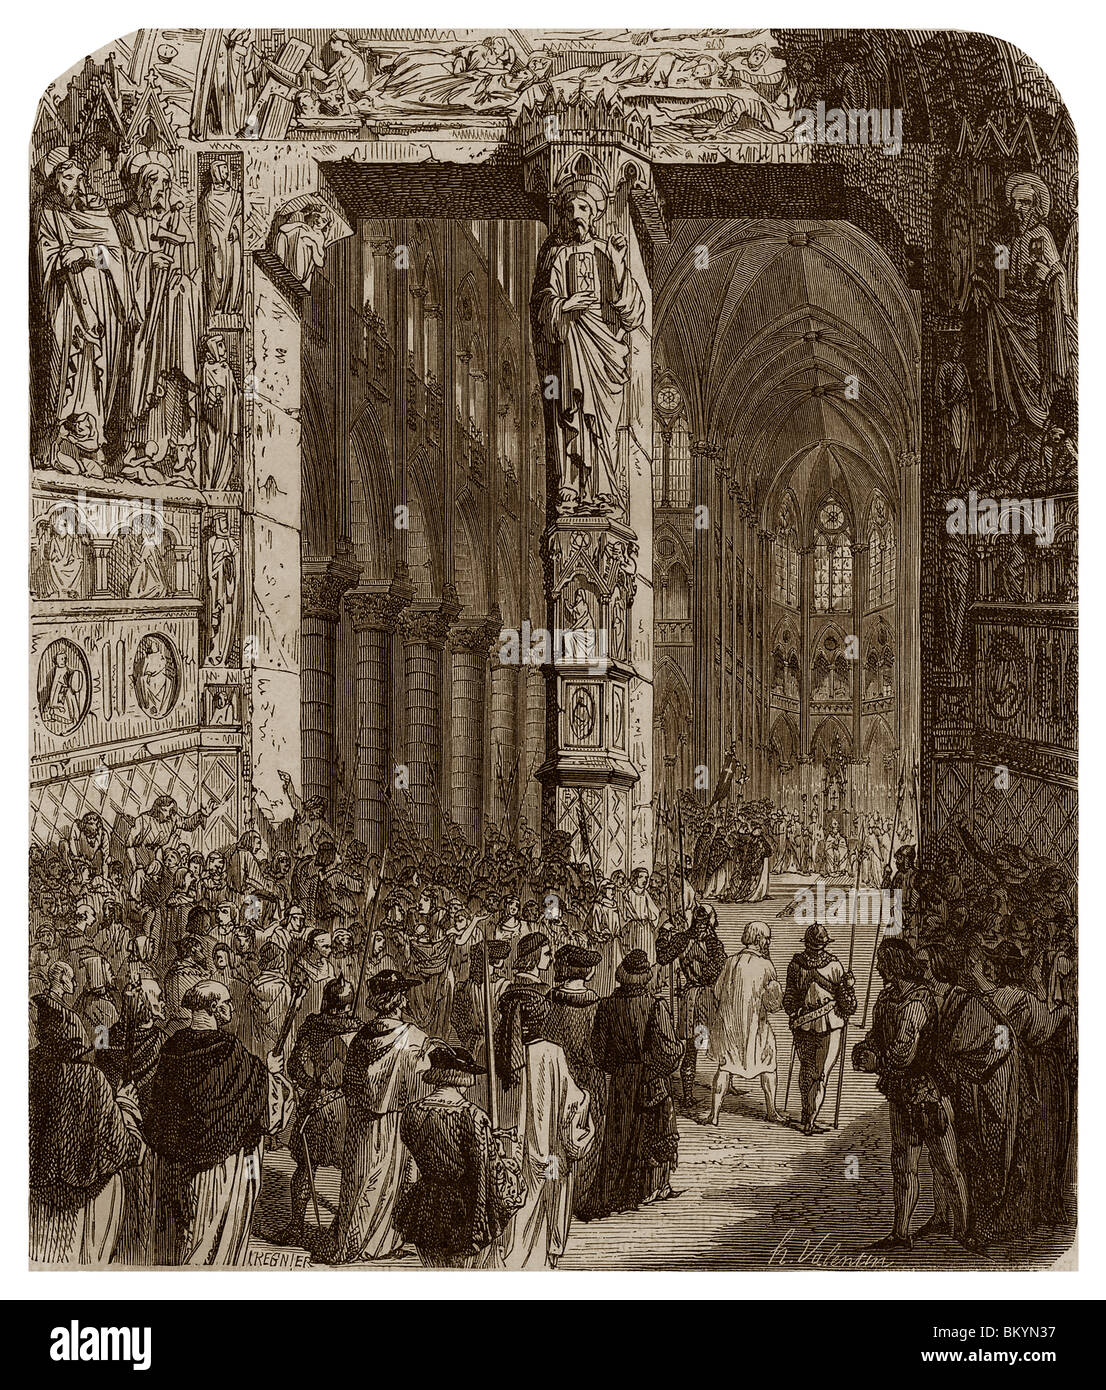 El 12 de abril de 1229, el conde Raymond VII de Toulouse juró en la iglesia Notre Dame de París en el futuro para ser fieles a la Iglesia. Foto de stock